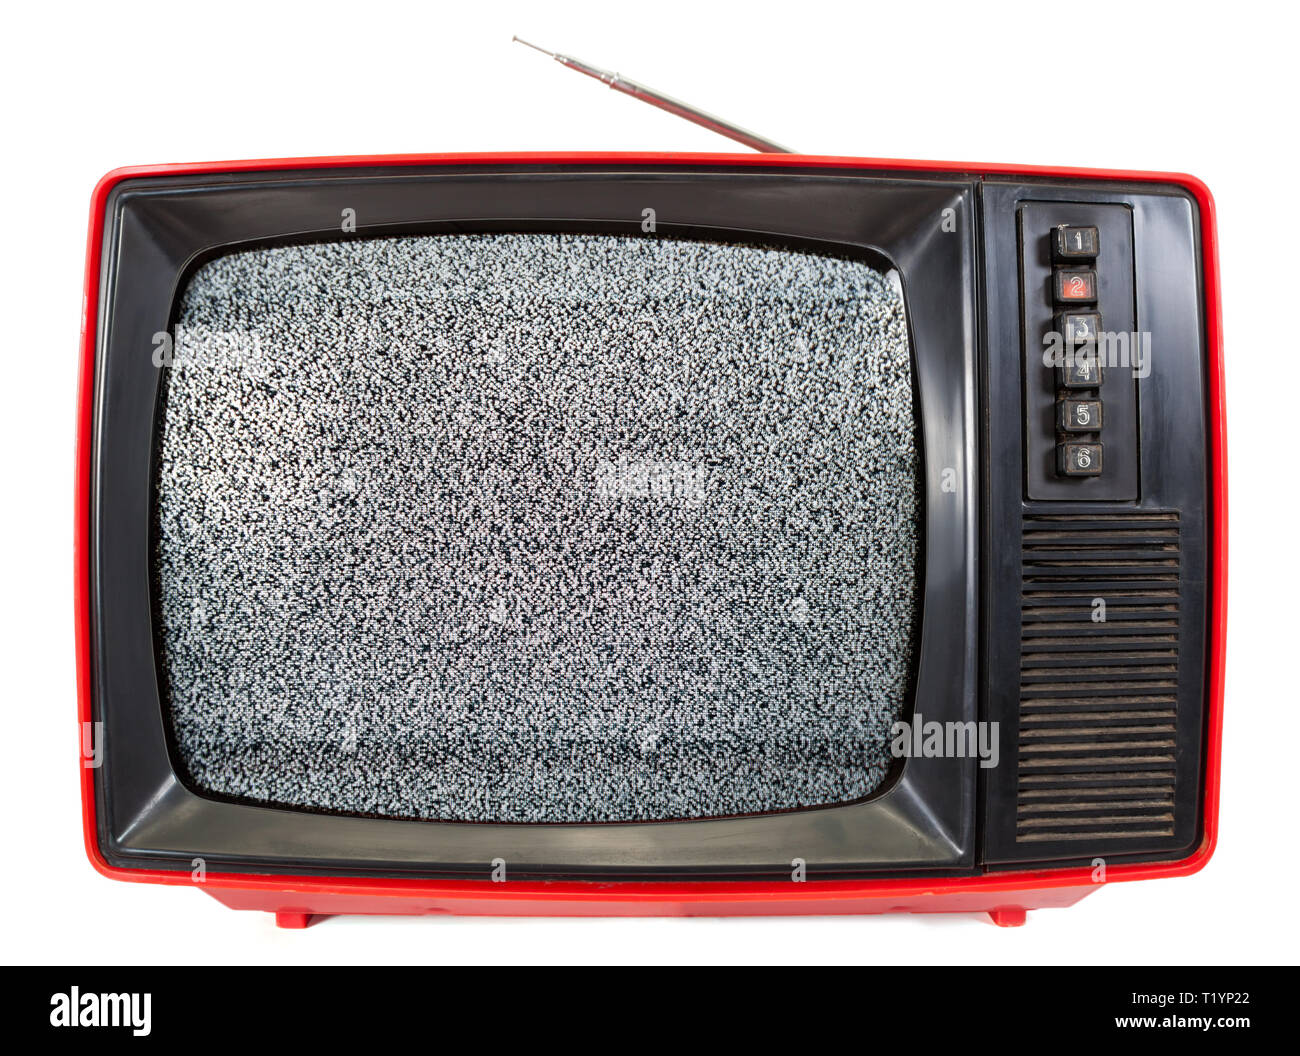 Vintage rouge téléviseur CRT portable fait en URSS avec la télévision du bruit statique sur l'écran isolé sur fond blanc. Technologie concept rétro Banque D'Images